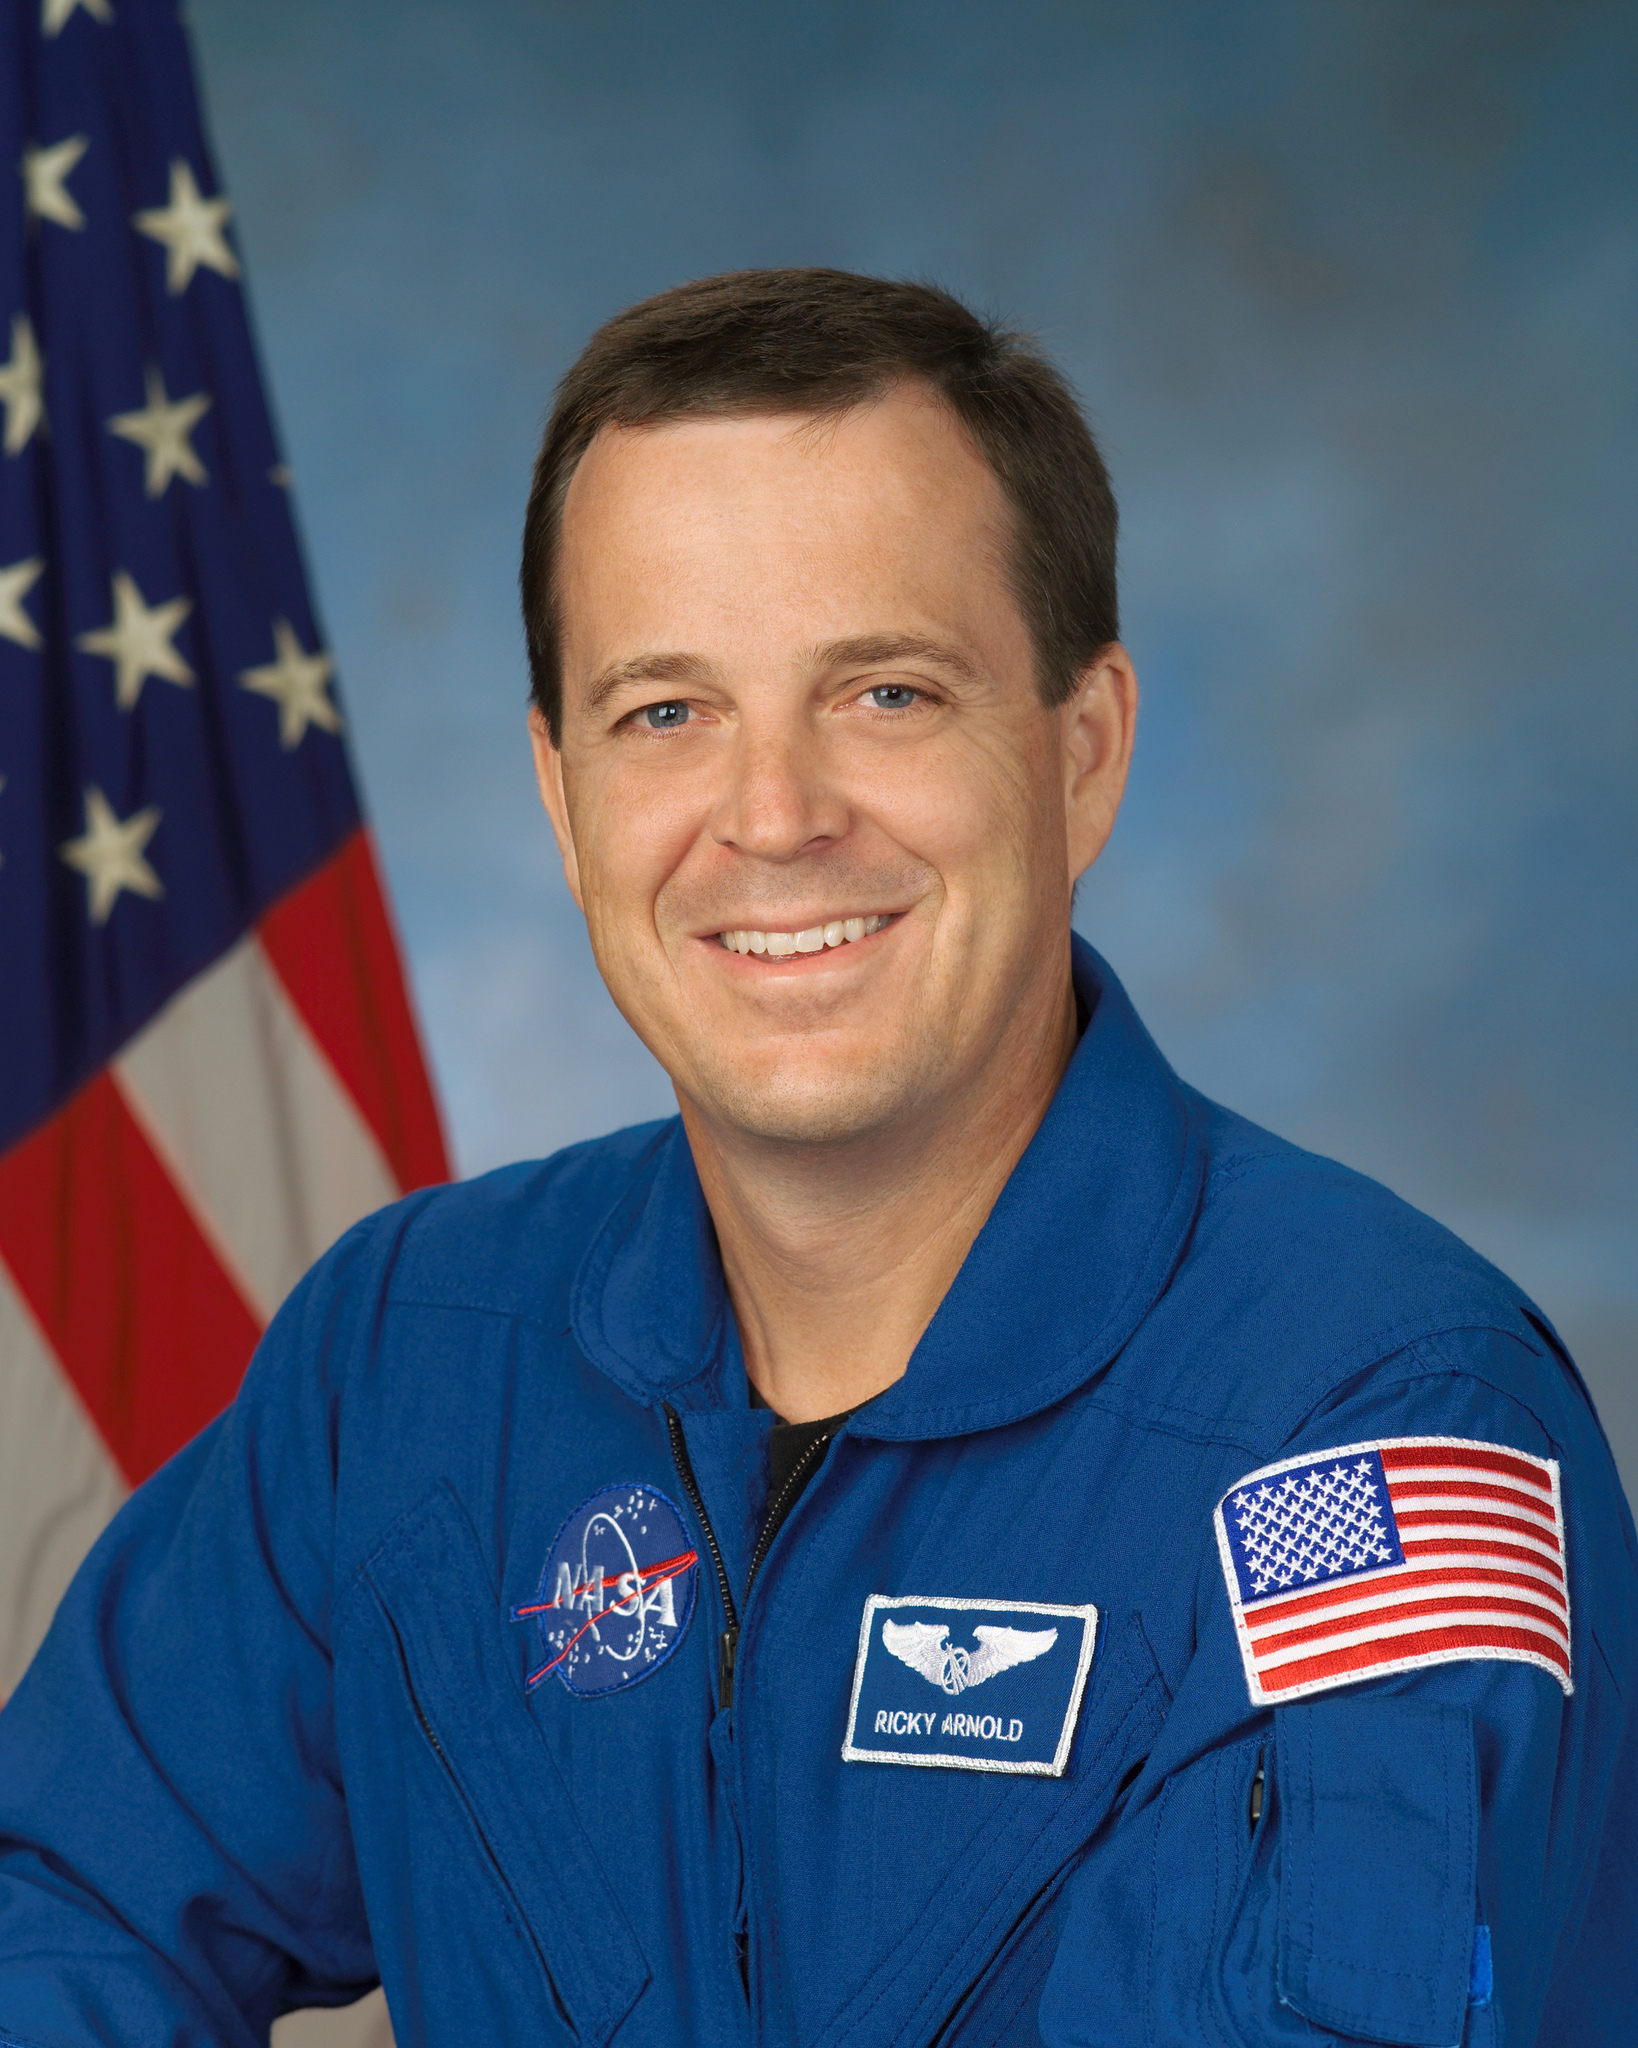 NASA astronaut Ricky Arnold